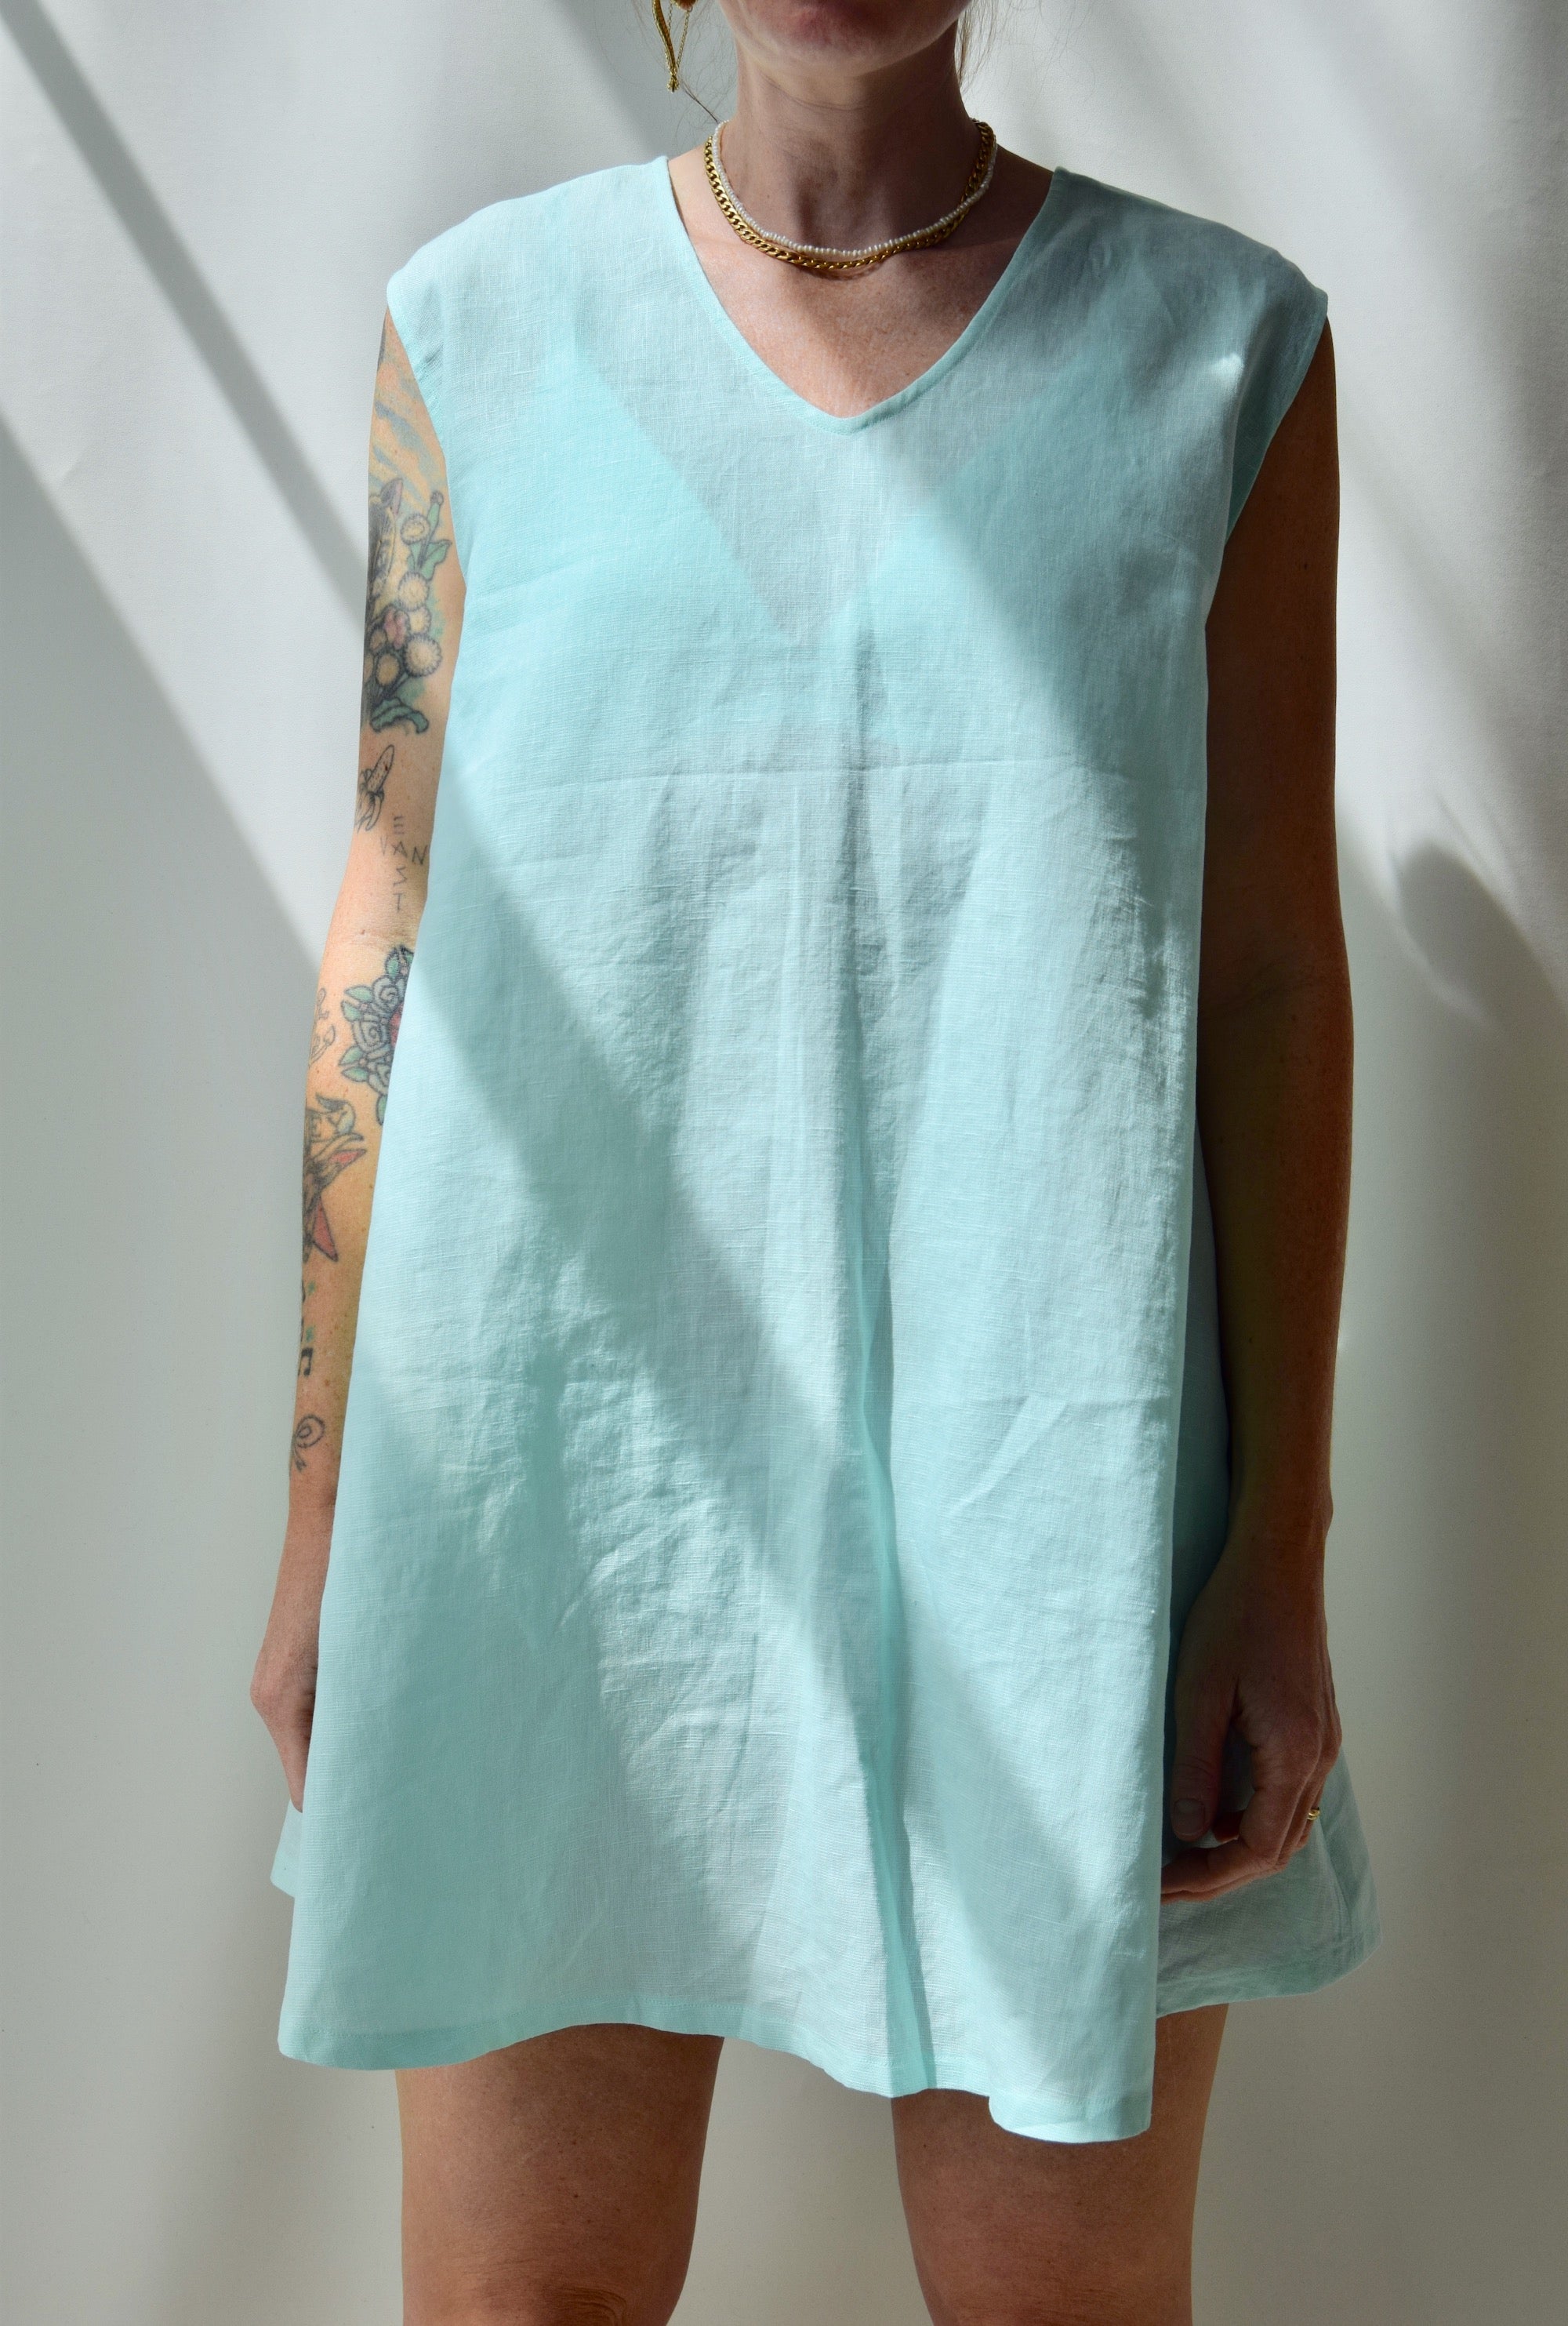 Seafoam Linen Summer Dress